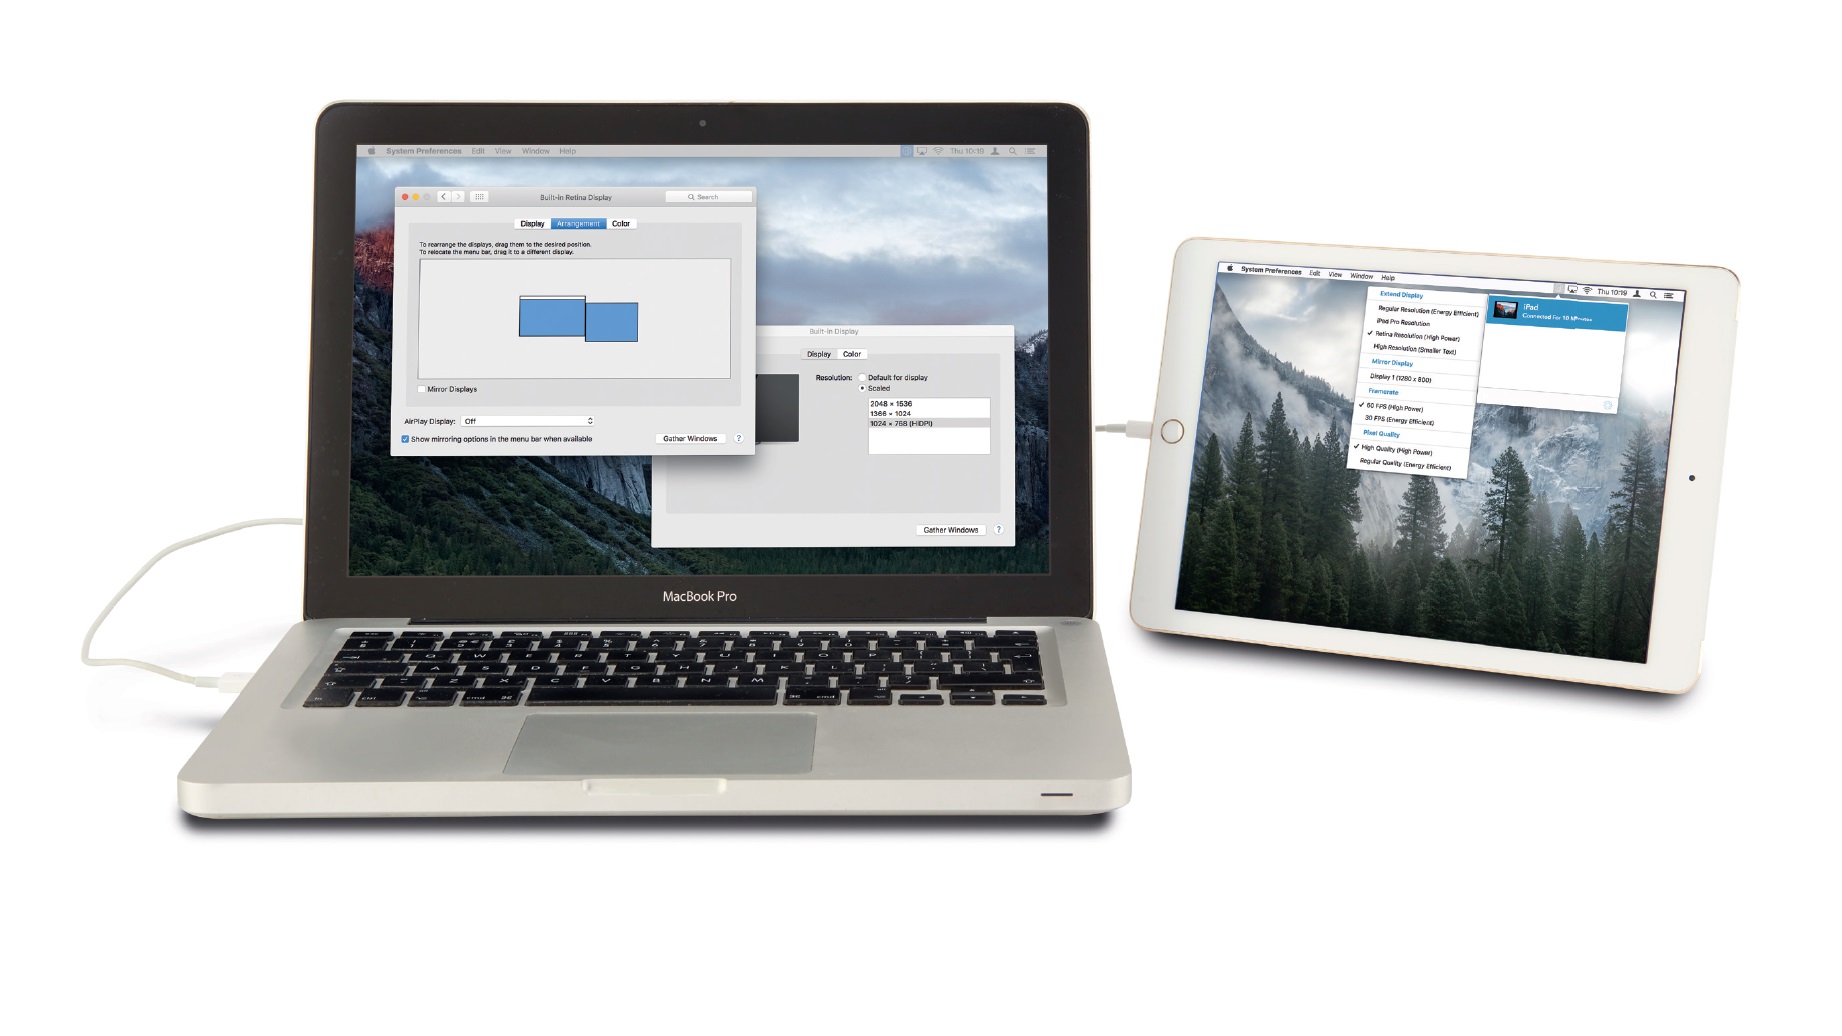 can you mirror ipad to mac on 2014 macbook pro